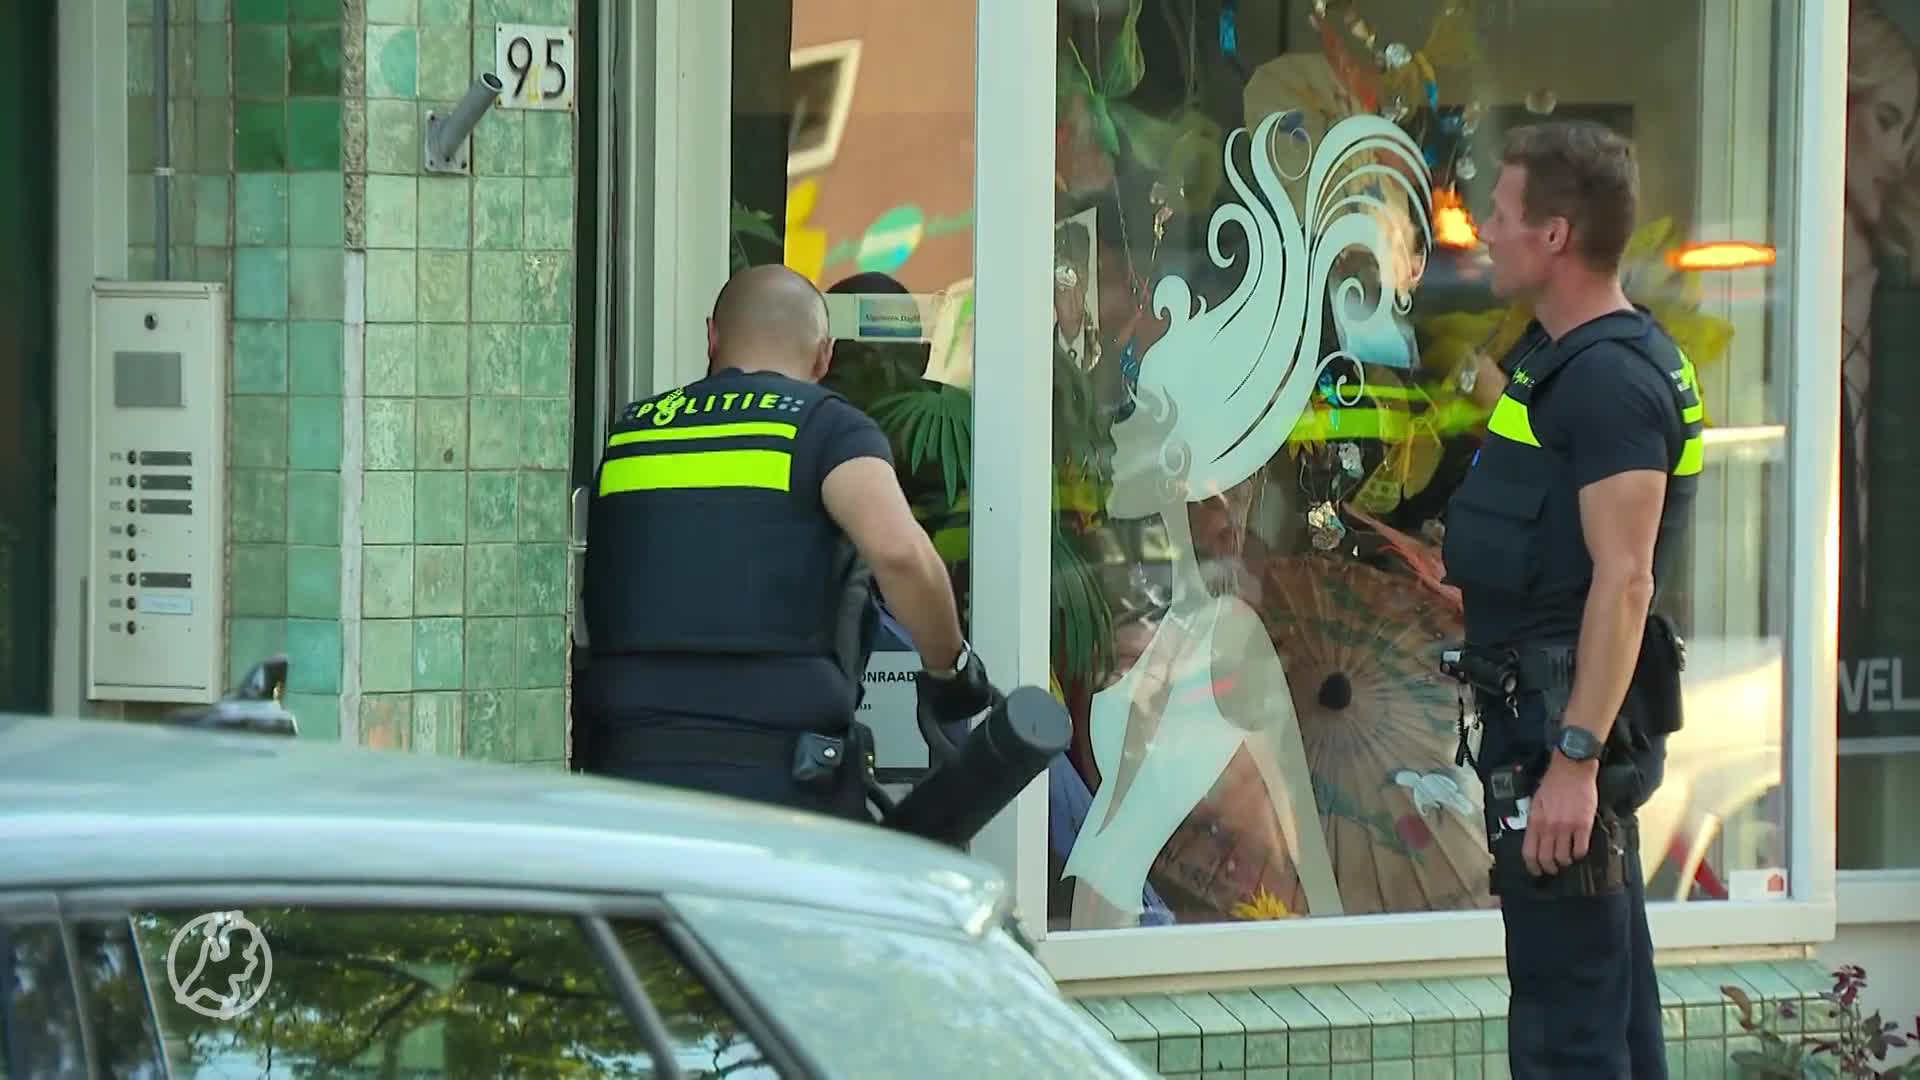 Kind doodgestoken in Rotterdam, politie pakt militair (22) op